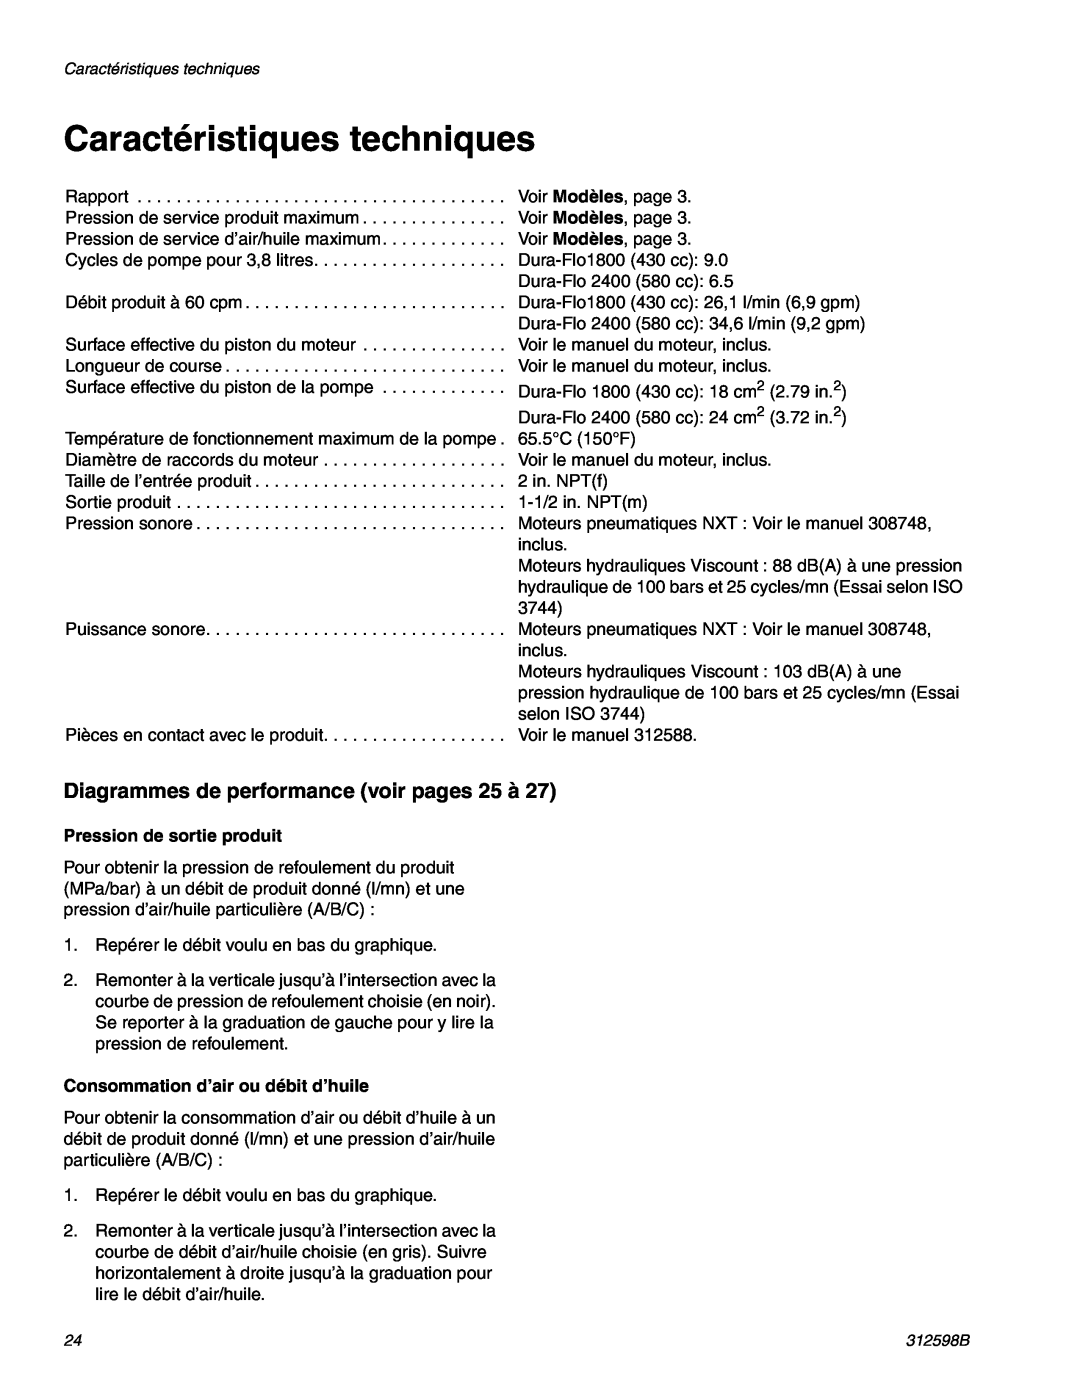 Graco TI8900a, TI8885a manual Caractéristiques techniques, Diagrammes de performance voir pages 25 à 